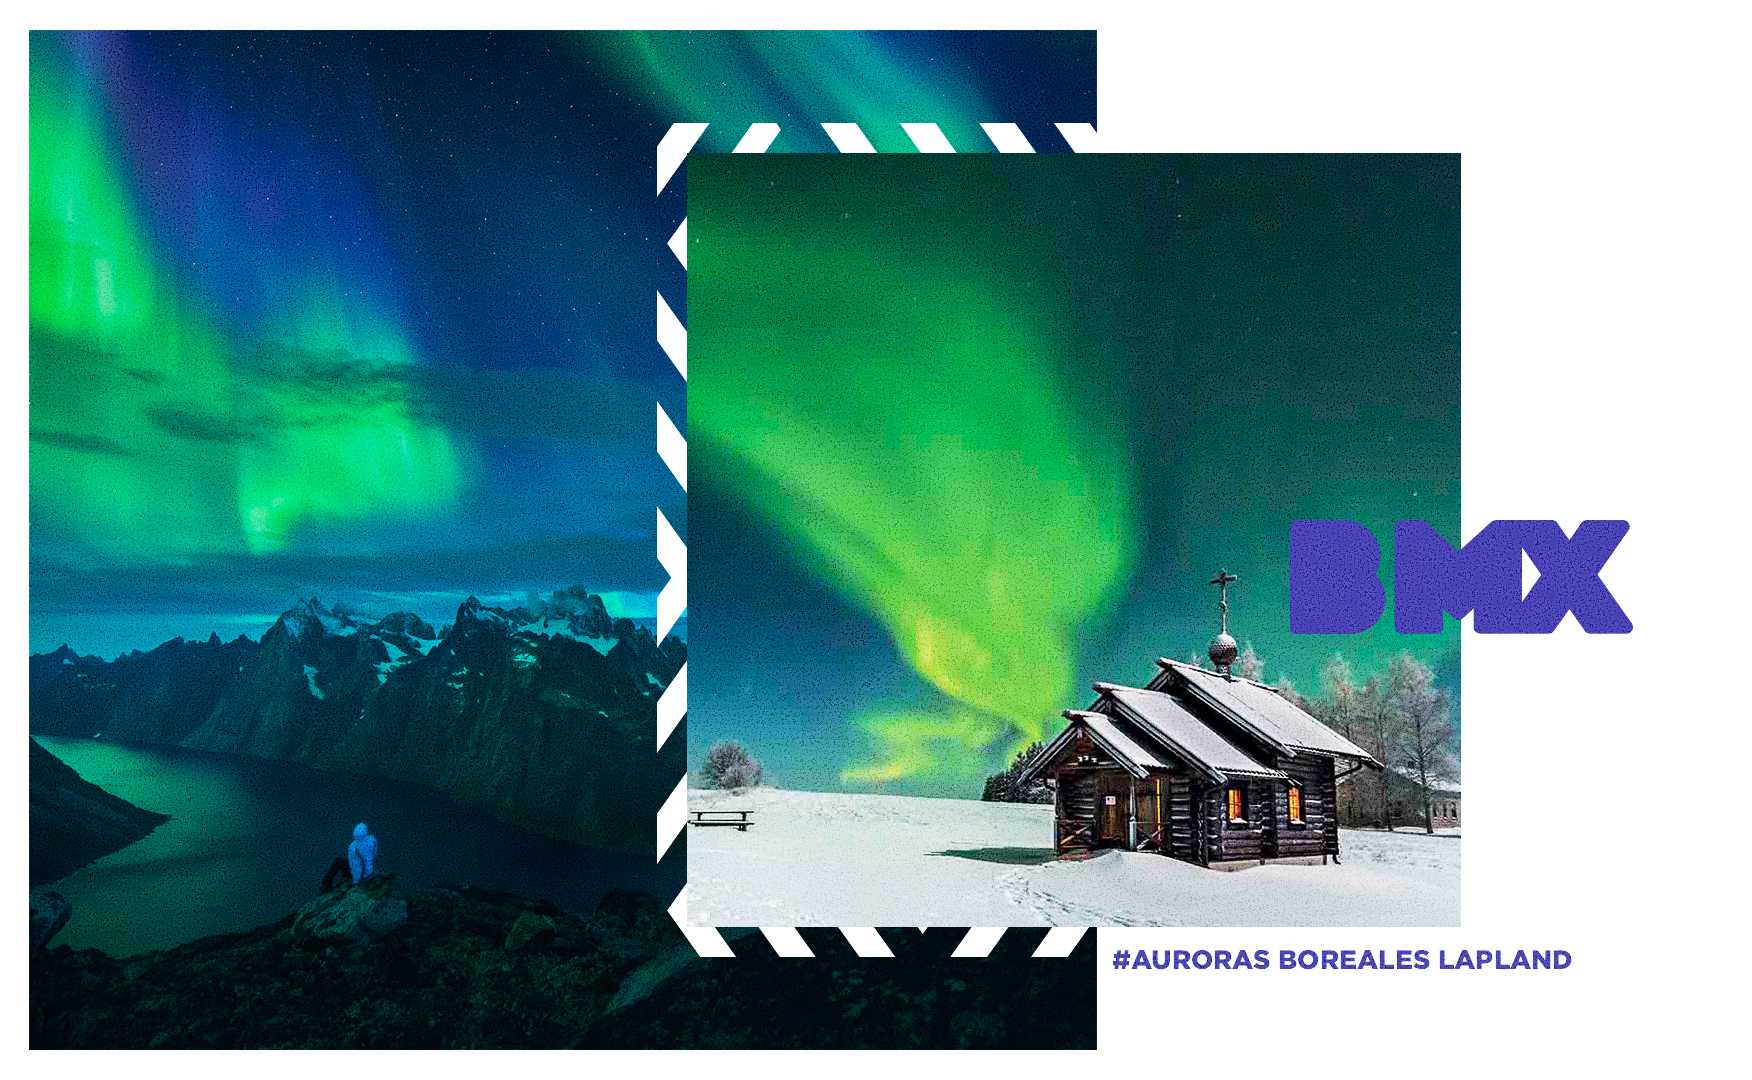 Ver auroras boreales en Lapland, Finlandia tour todo incluido